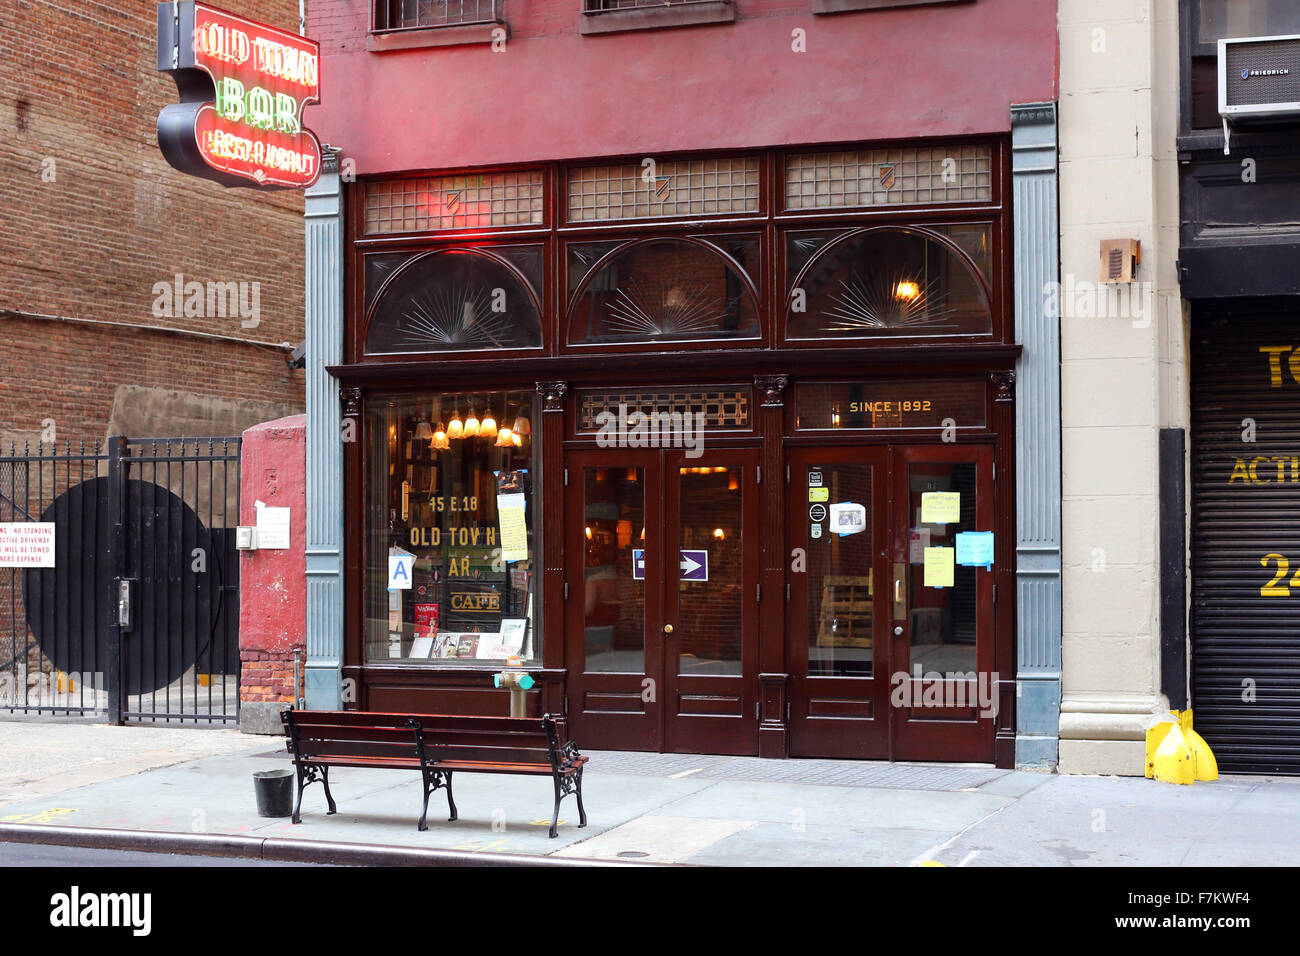 Vieille ville de Bar et Restaurant, 45 F.18th St, New York de devanture extérieure. Un bar et restaurant dans le quartier Gramercy de Manhattan. Banque D'Images